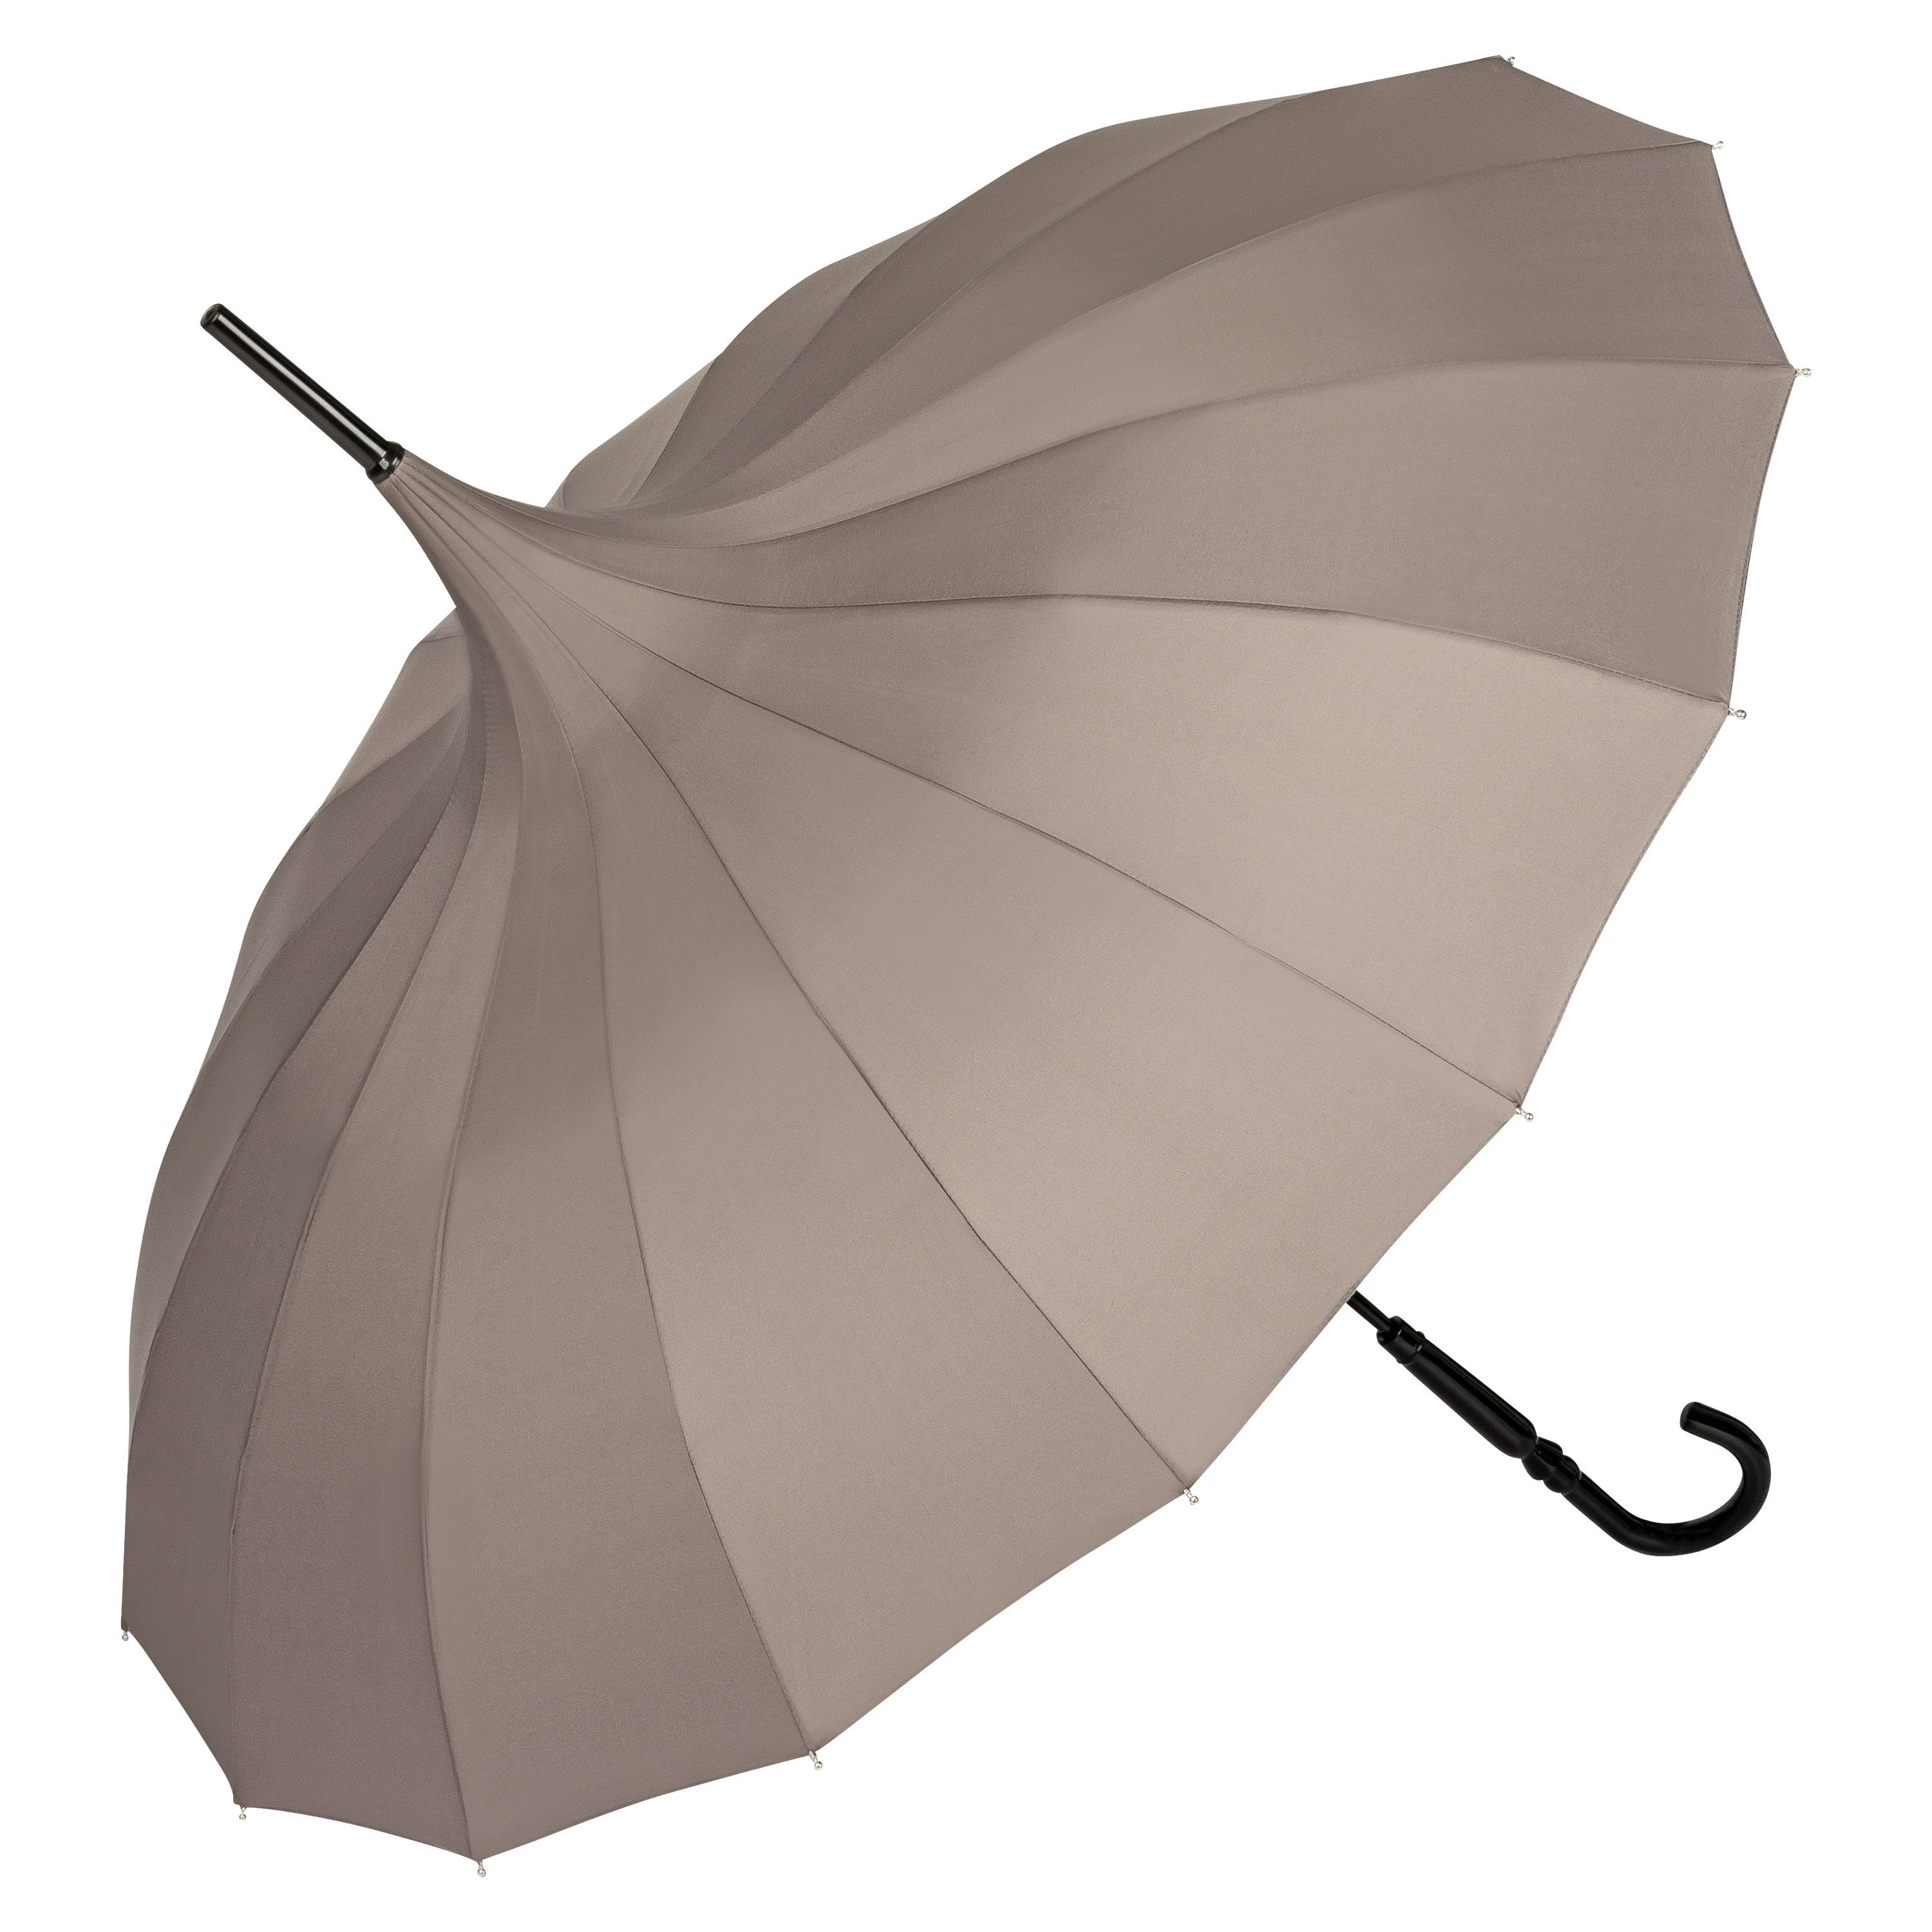 von Lilienfeld Stockregenschirm Regenschirm Sonnenschirm Pagode Charlotte, Pagodenform mit 16 Segmenten grau